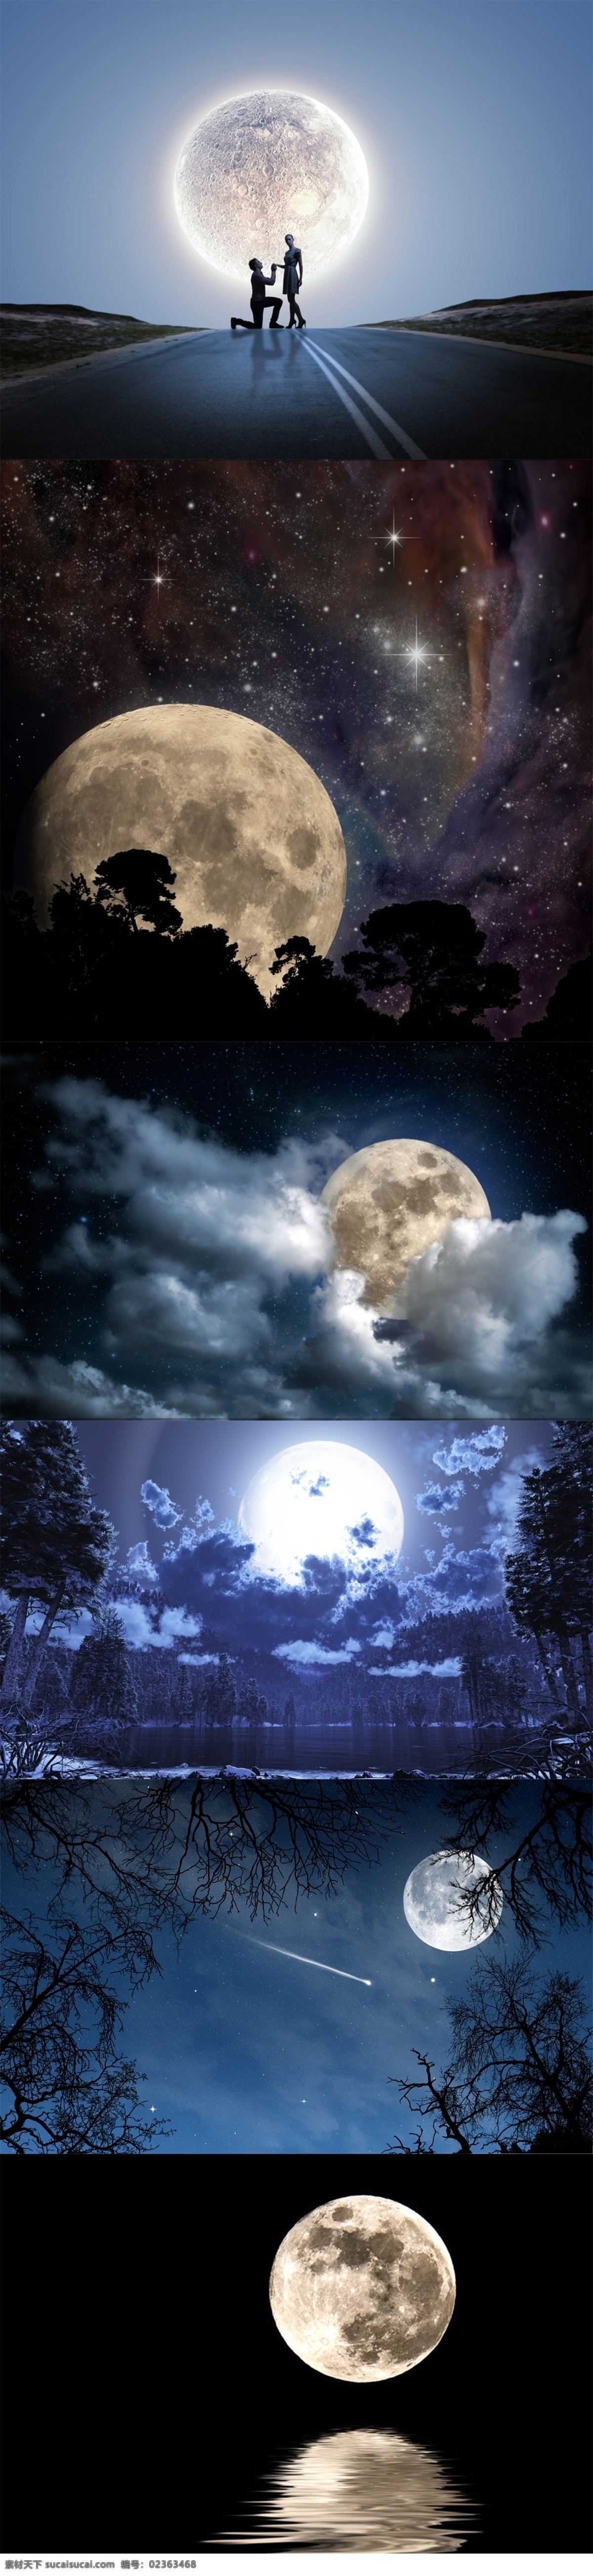 月亮 月球 唯美 星空 背景 水面 波光粼粼 夜空 夜色 超级月亮 赏月 中秋 夜晚 海面倒影 月光 唯美风景 宇宙太空 现代科技 云雾